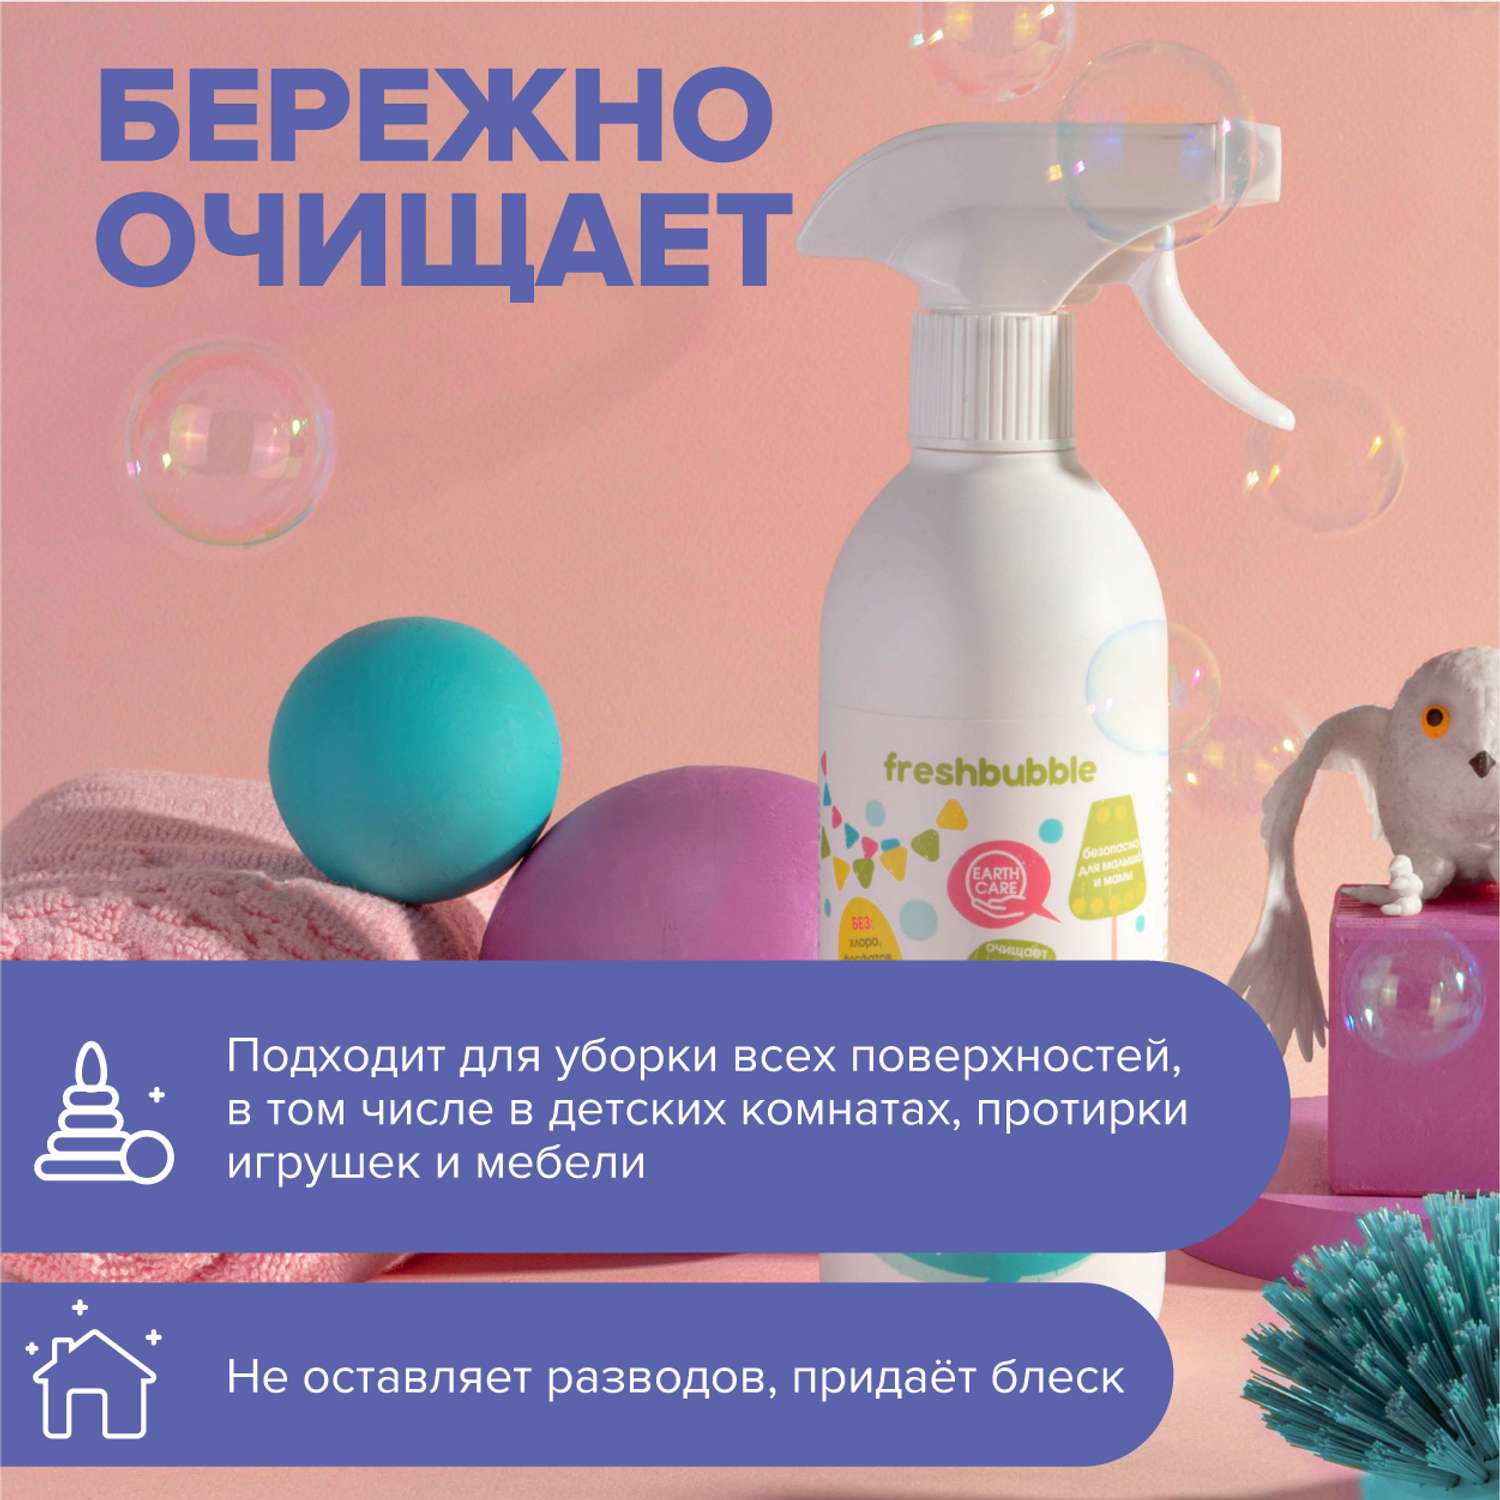 Спрей для уборки Freshbubble в детских комнатах Экологичный 500 мл - фото 4